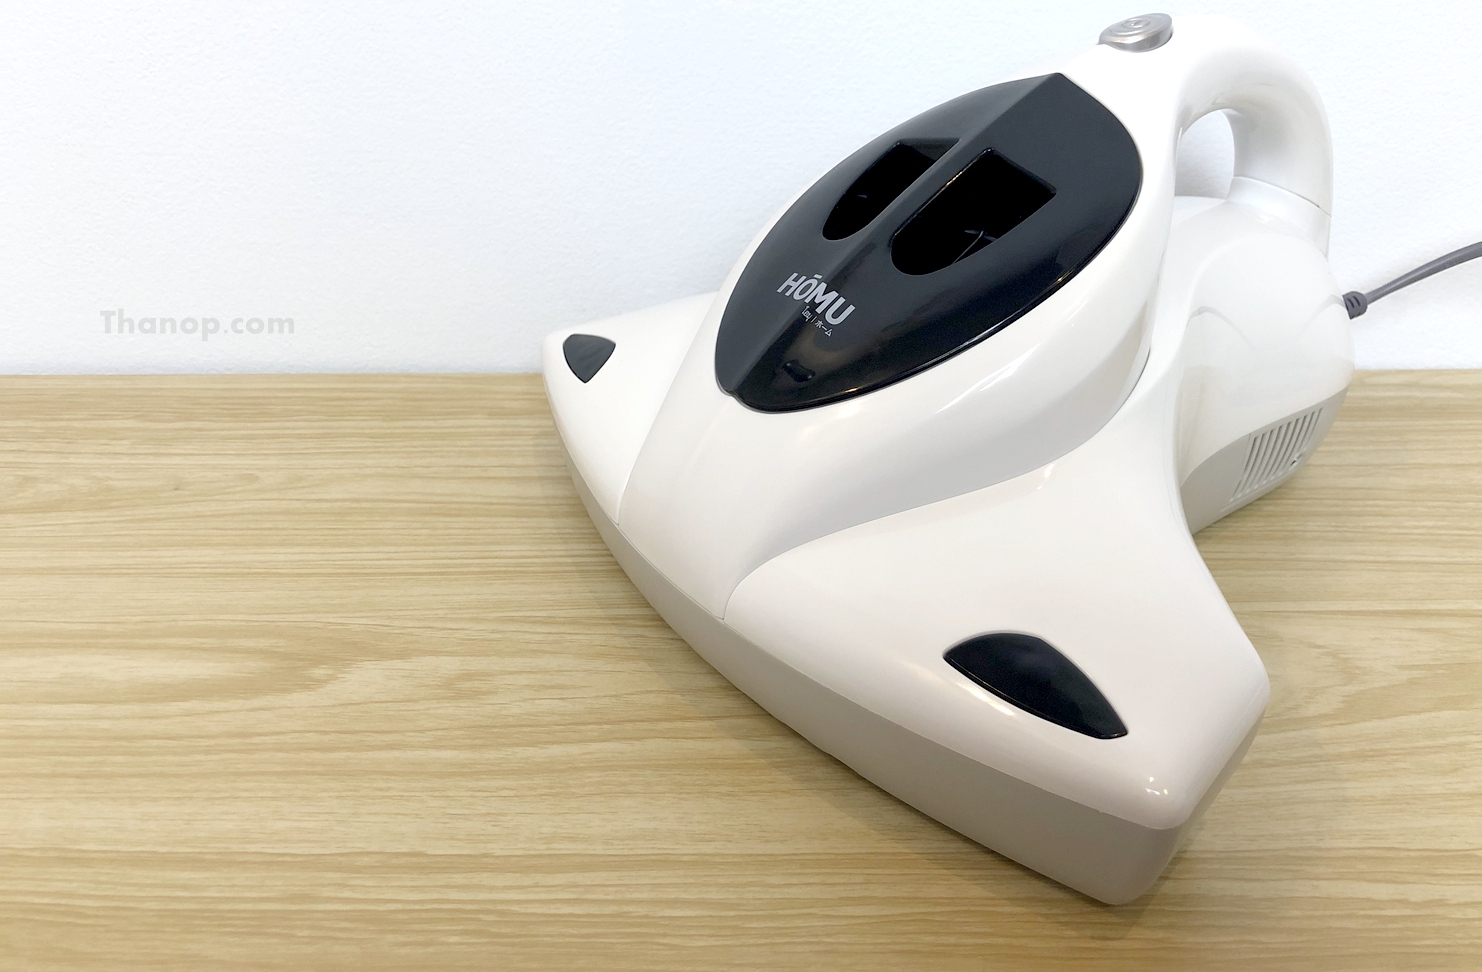 homu-uv-vacuum-cleaner-featured-image